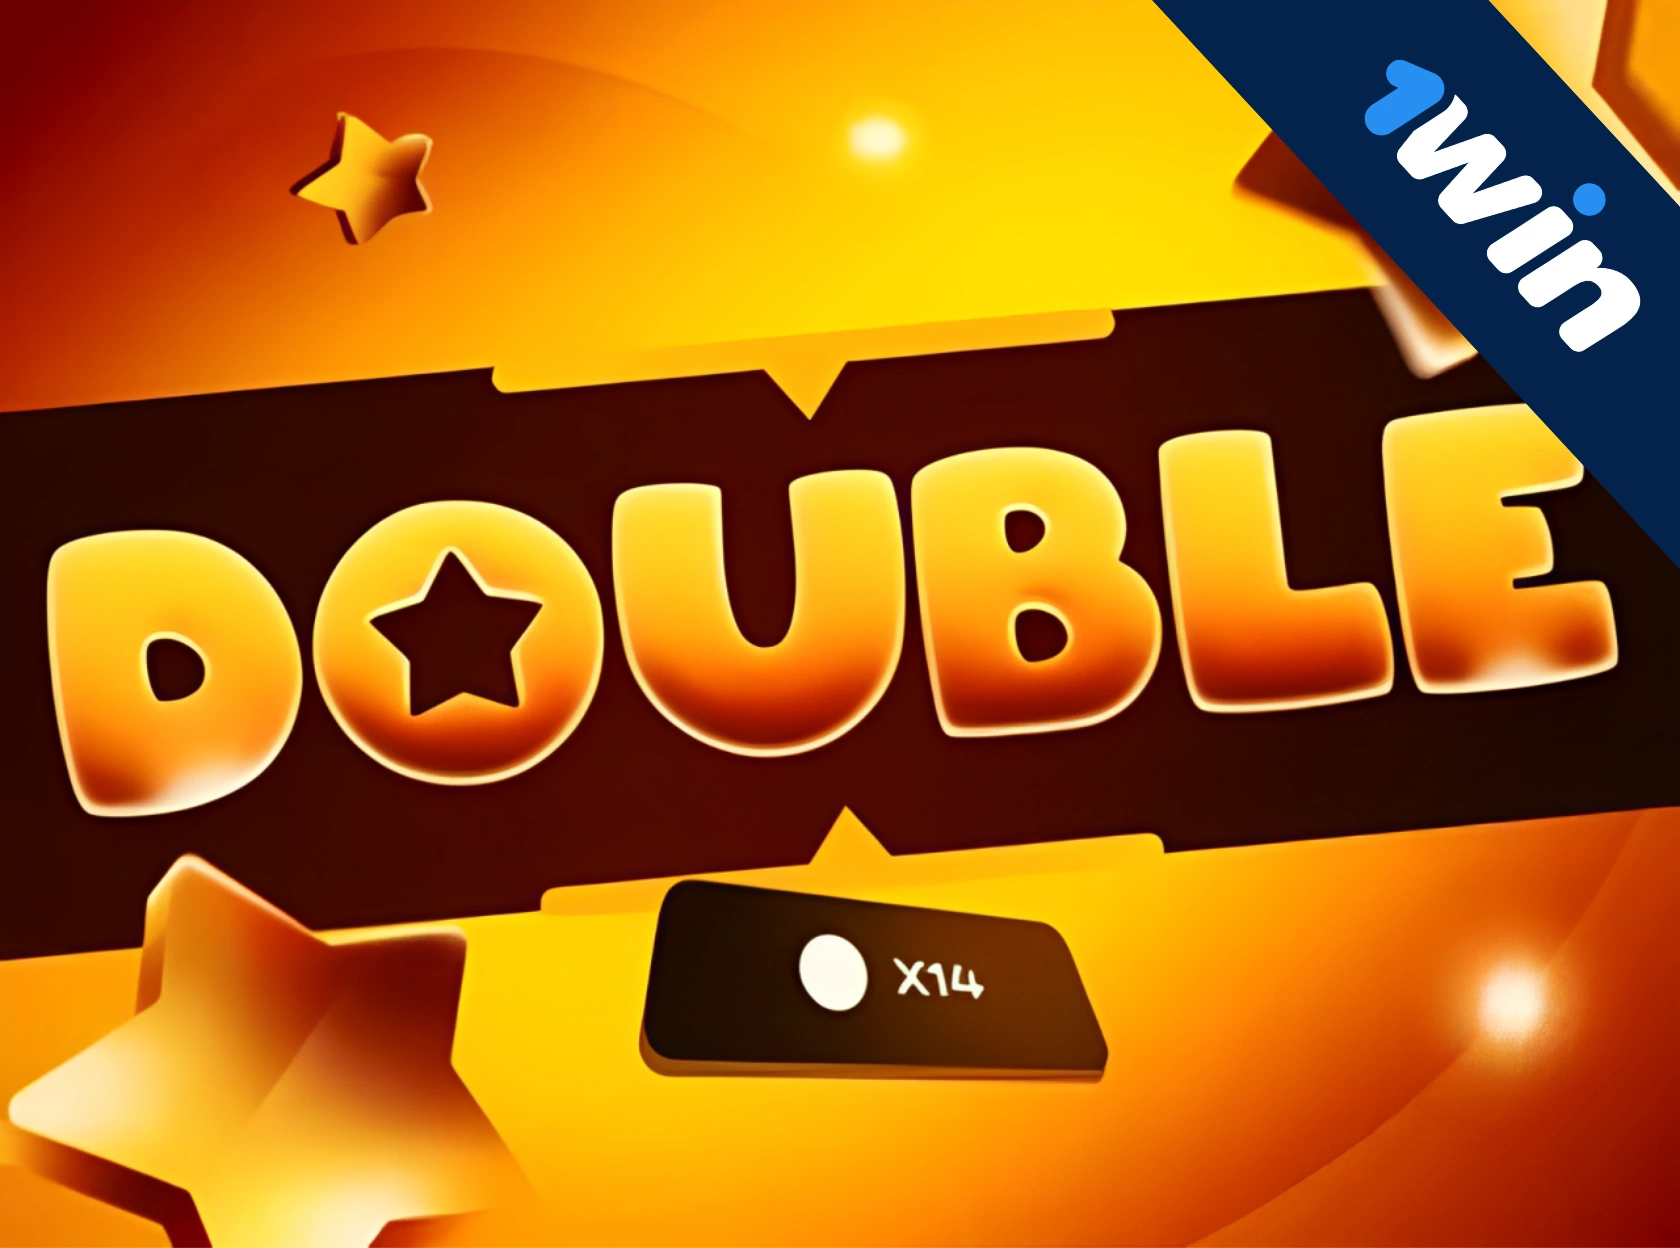 Double 1win - игра на деньги играть онлайн